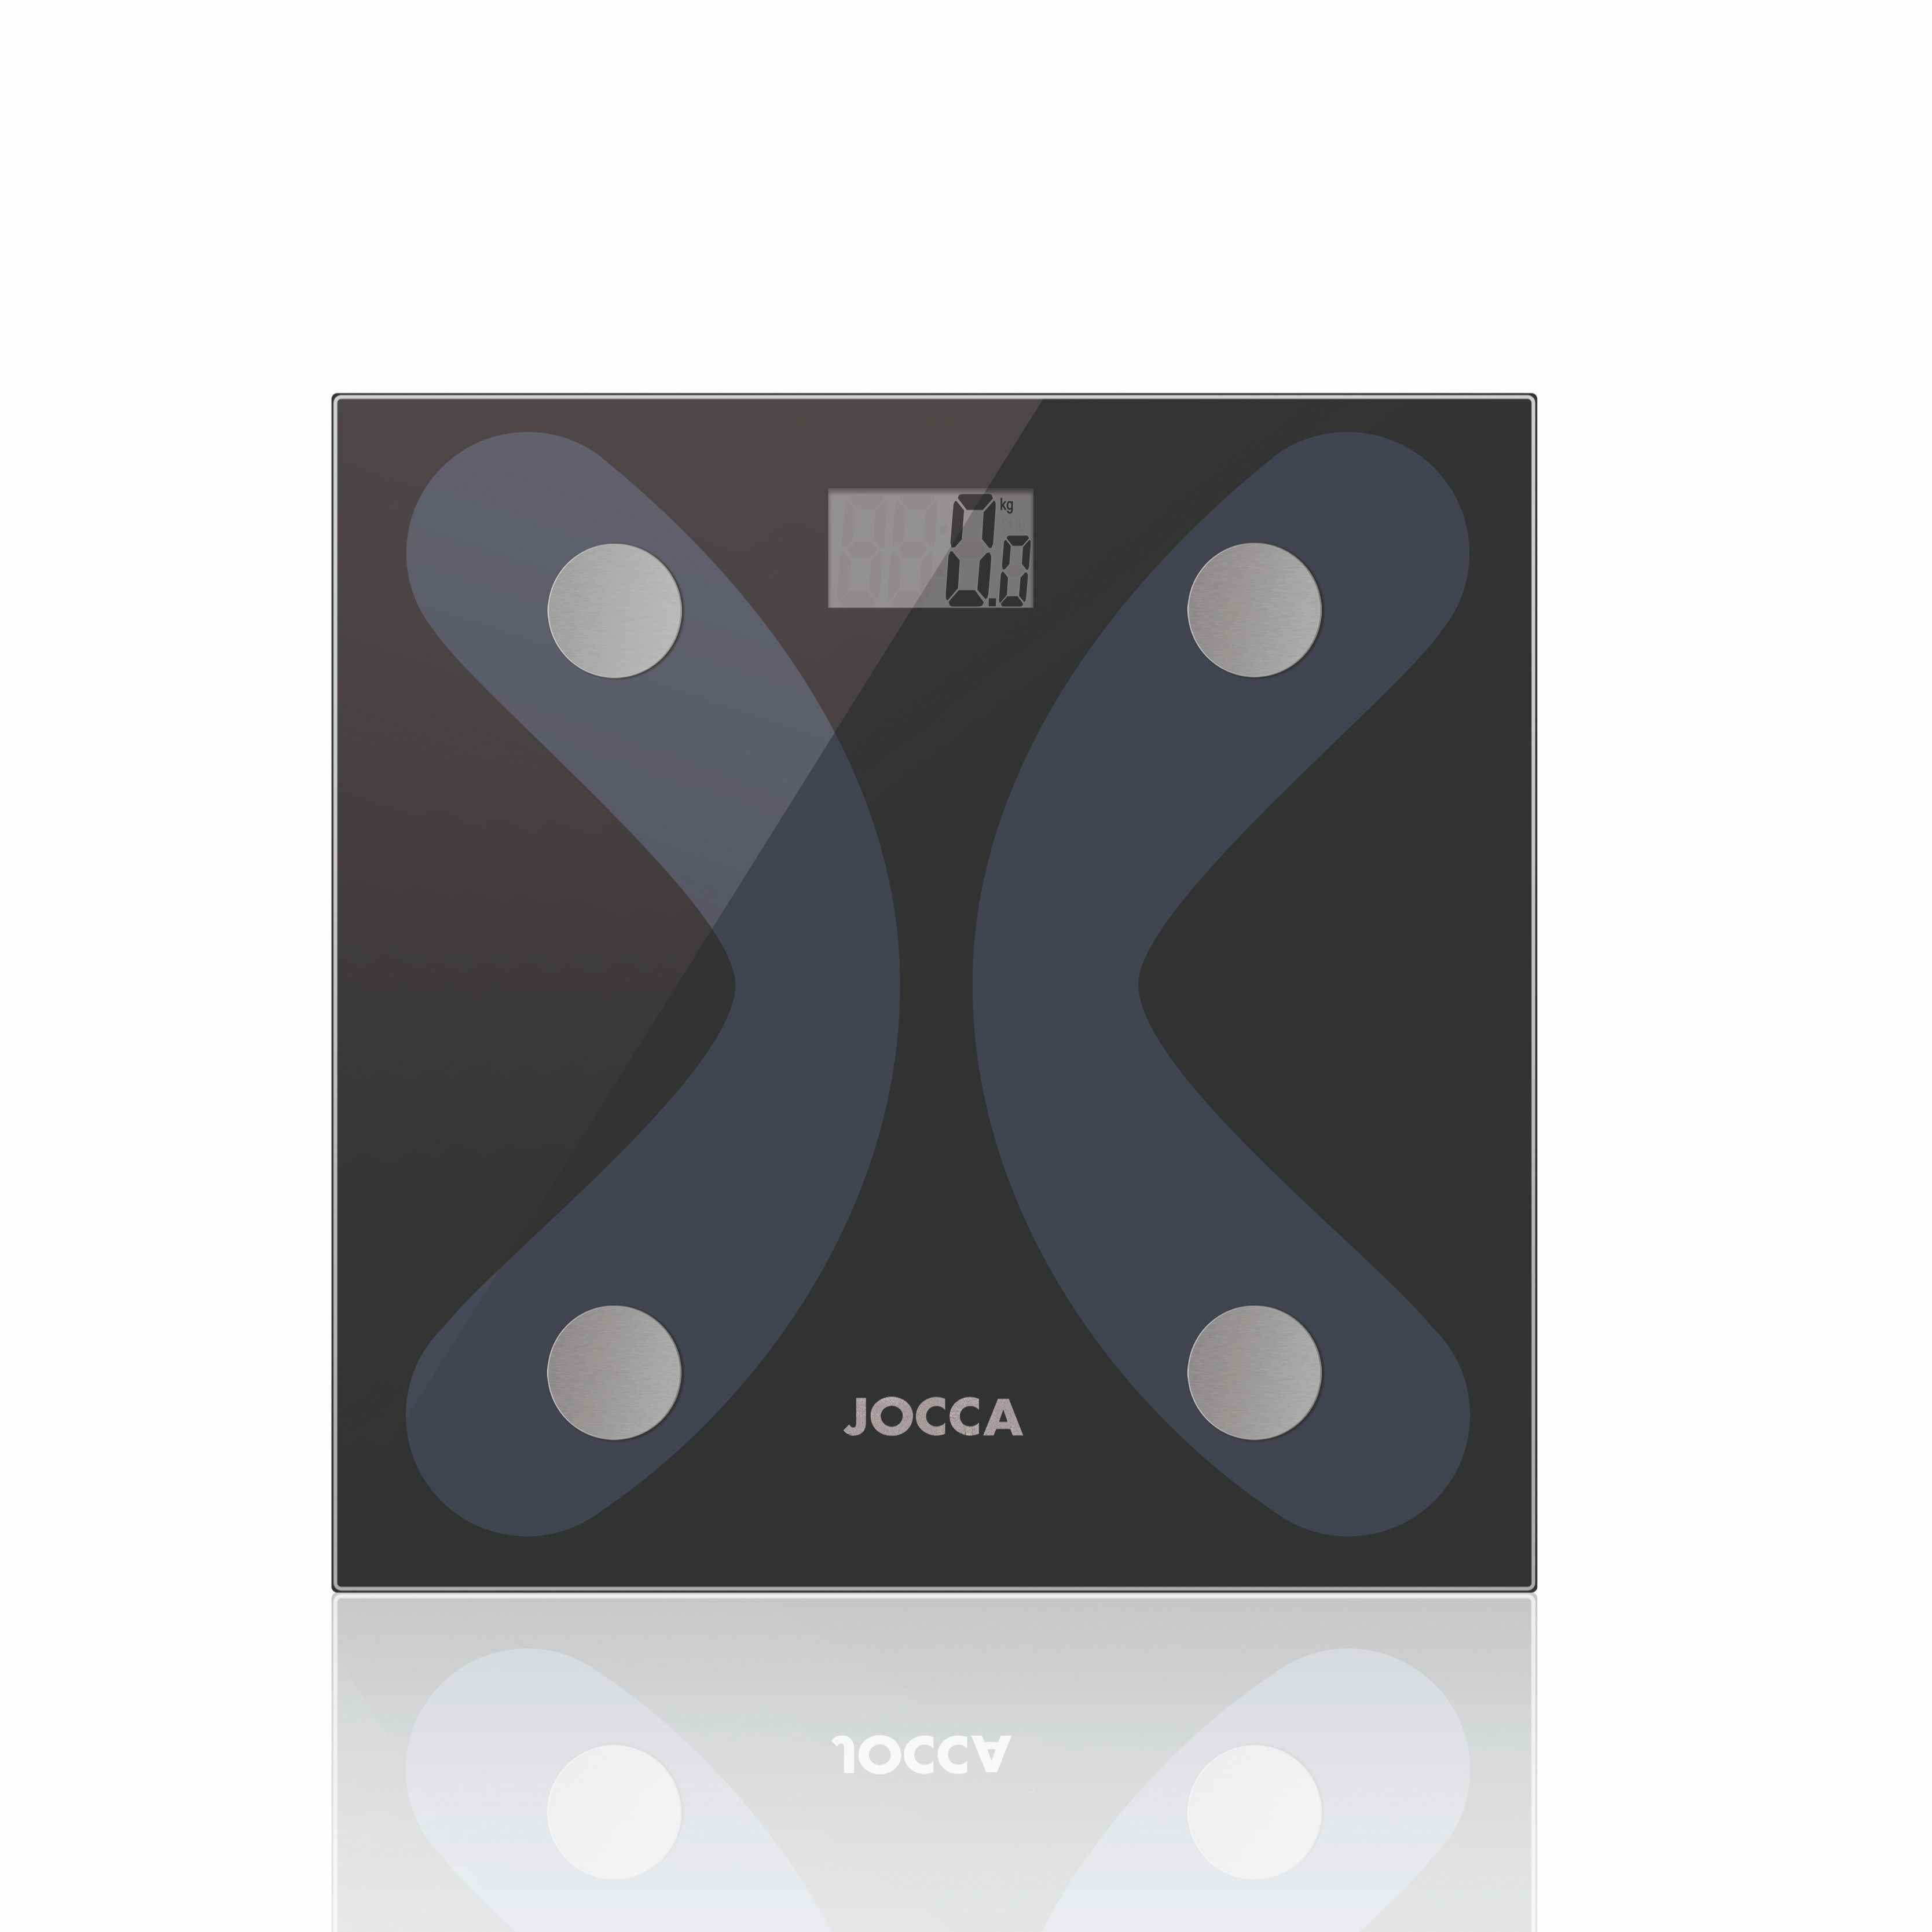 Jocca - Báscula Jocca con bluetooth 4.0 hecha de vidrio templado que determina el porcentaje de grasa corporal, agua corporal, masa muscular, hueso, IMC, calorías, grasa visceral y peso a través de la aplicación móvil